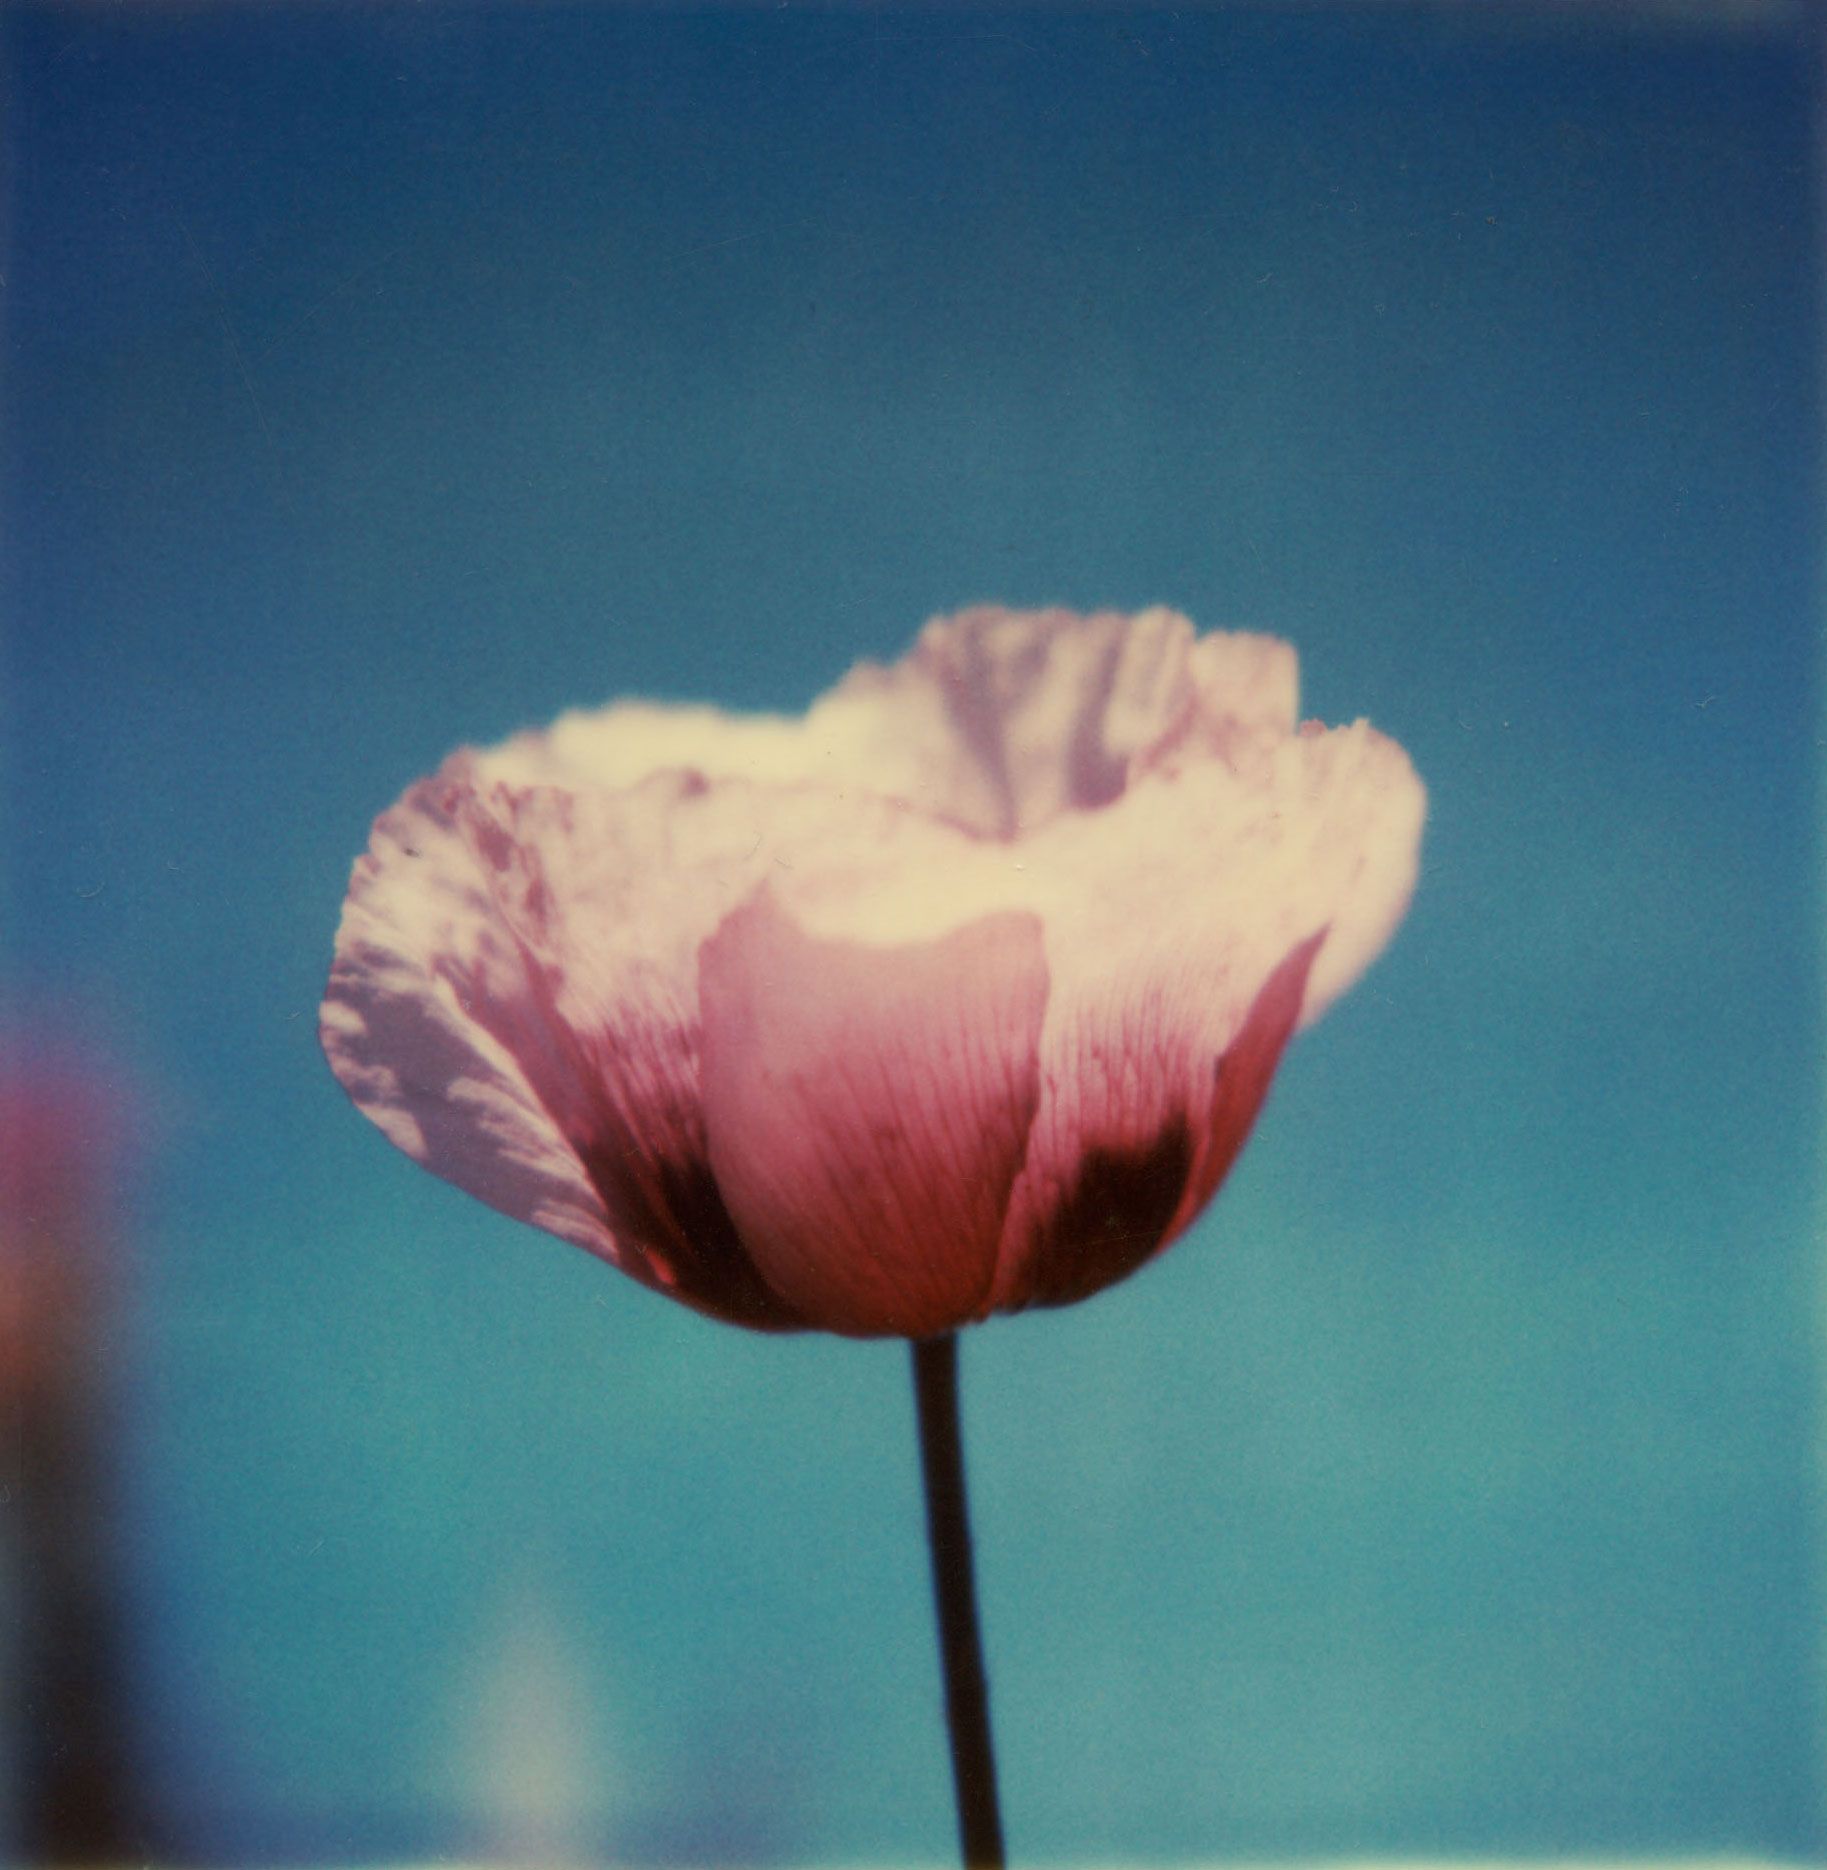 Robby Müller — Flora Polaroids